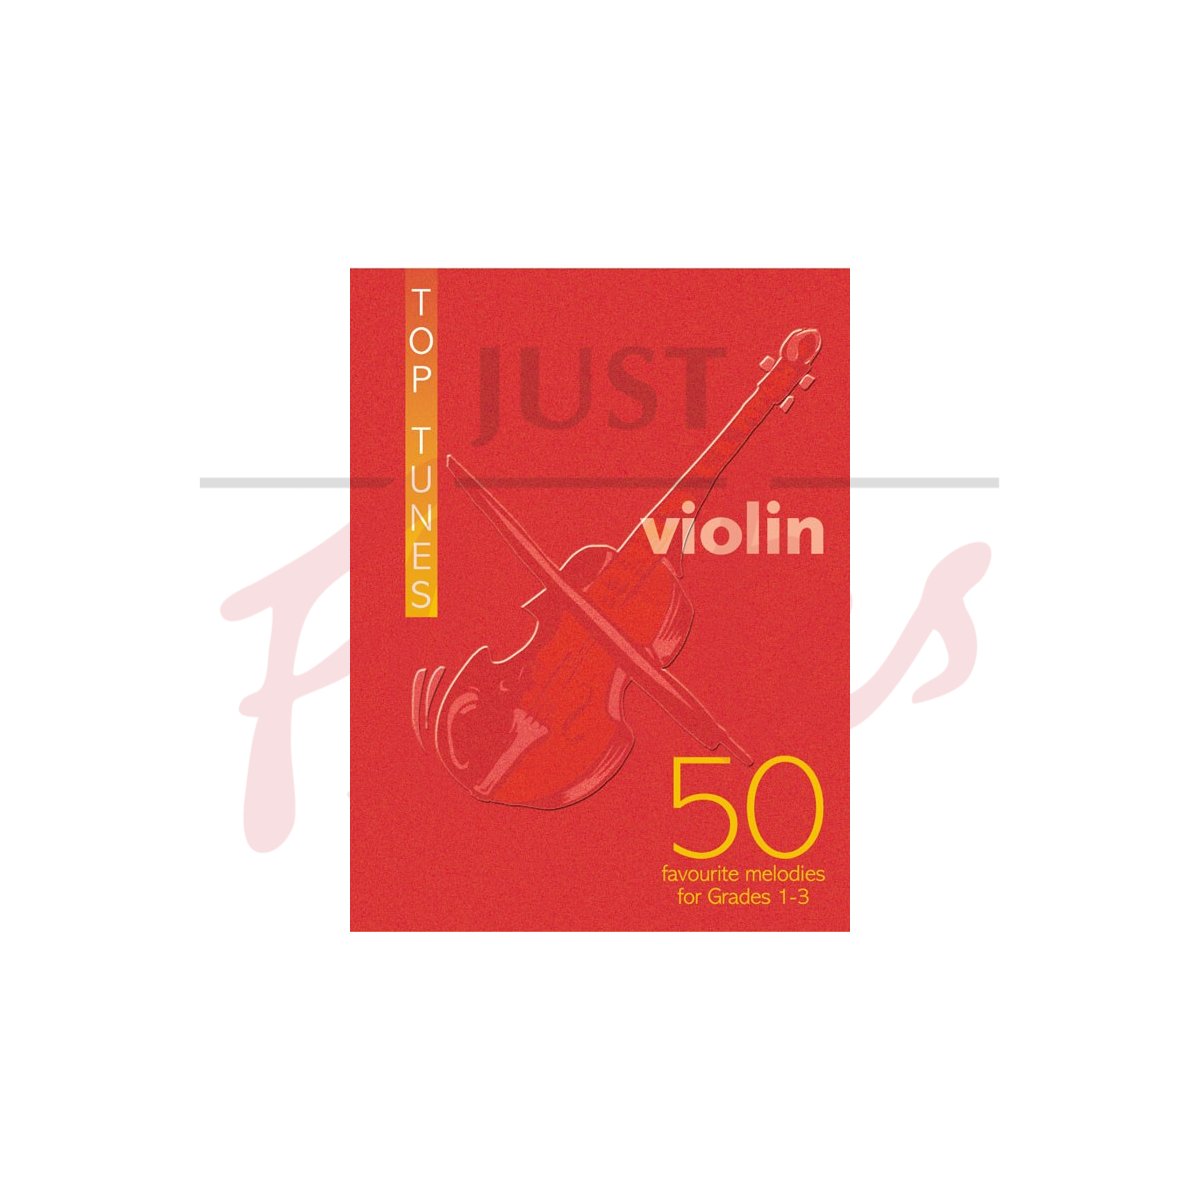 Top Tunes for Violin